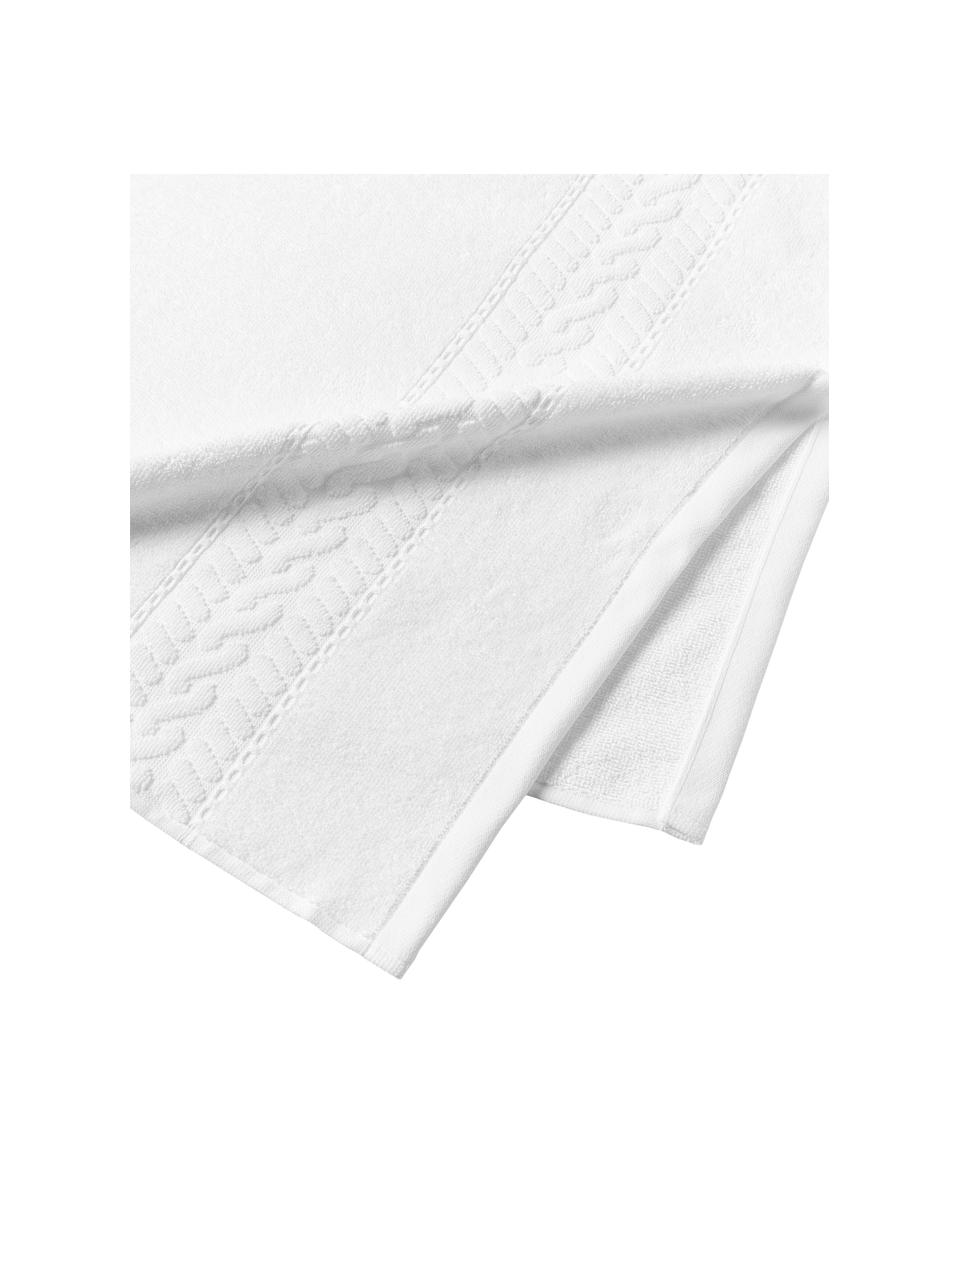 Handtuch Cordelia in verschiedenen Größen, 100 % Baumwolle, Weiß, Handtuch, B 50 x L 100 cm, 2 Stück